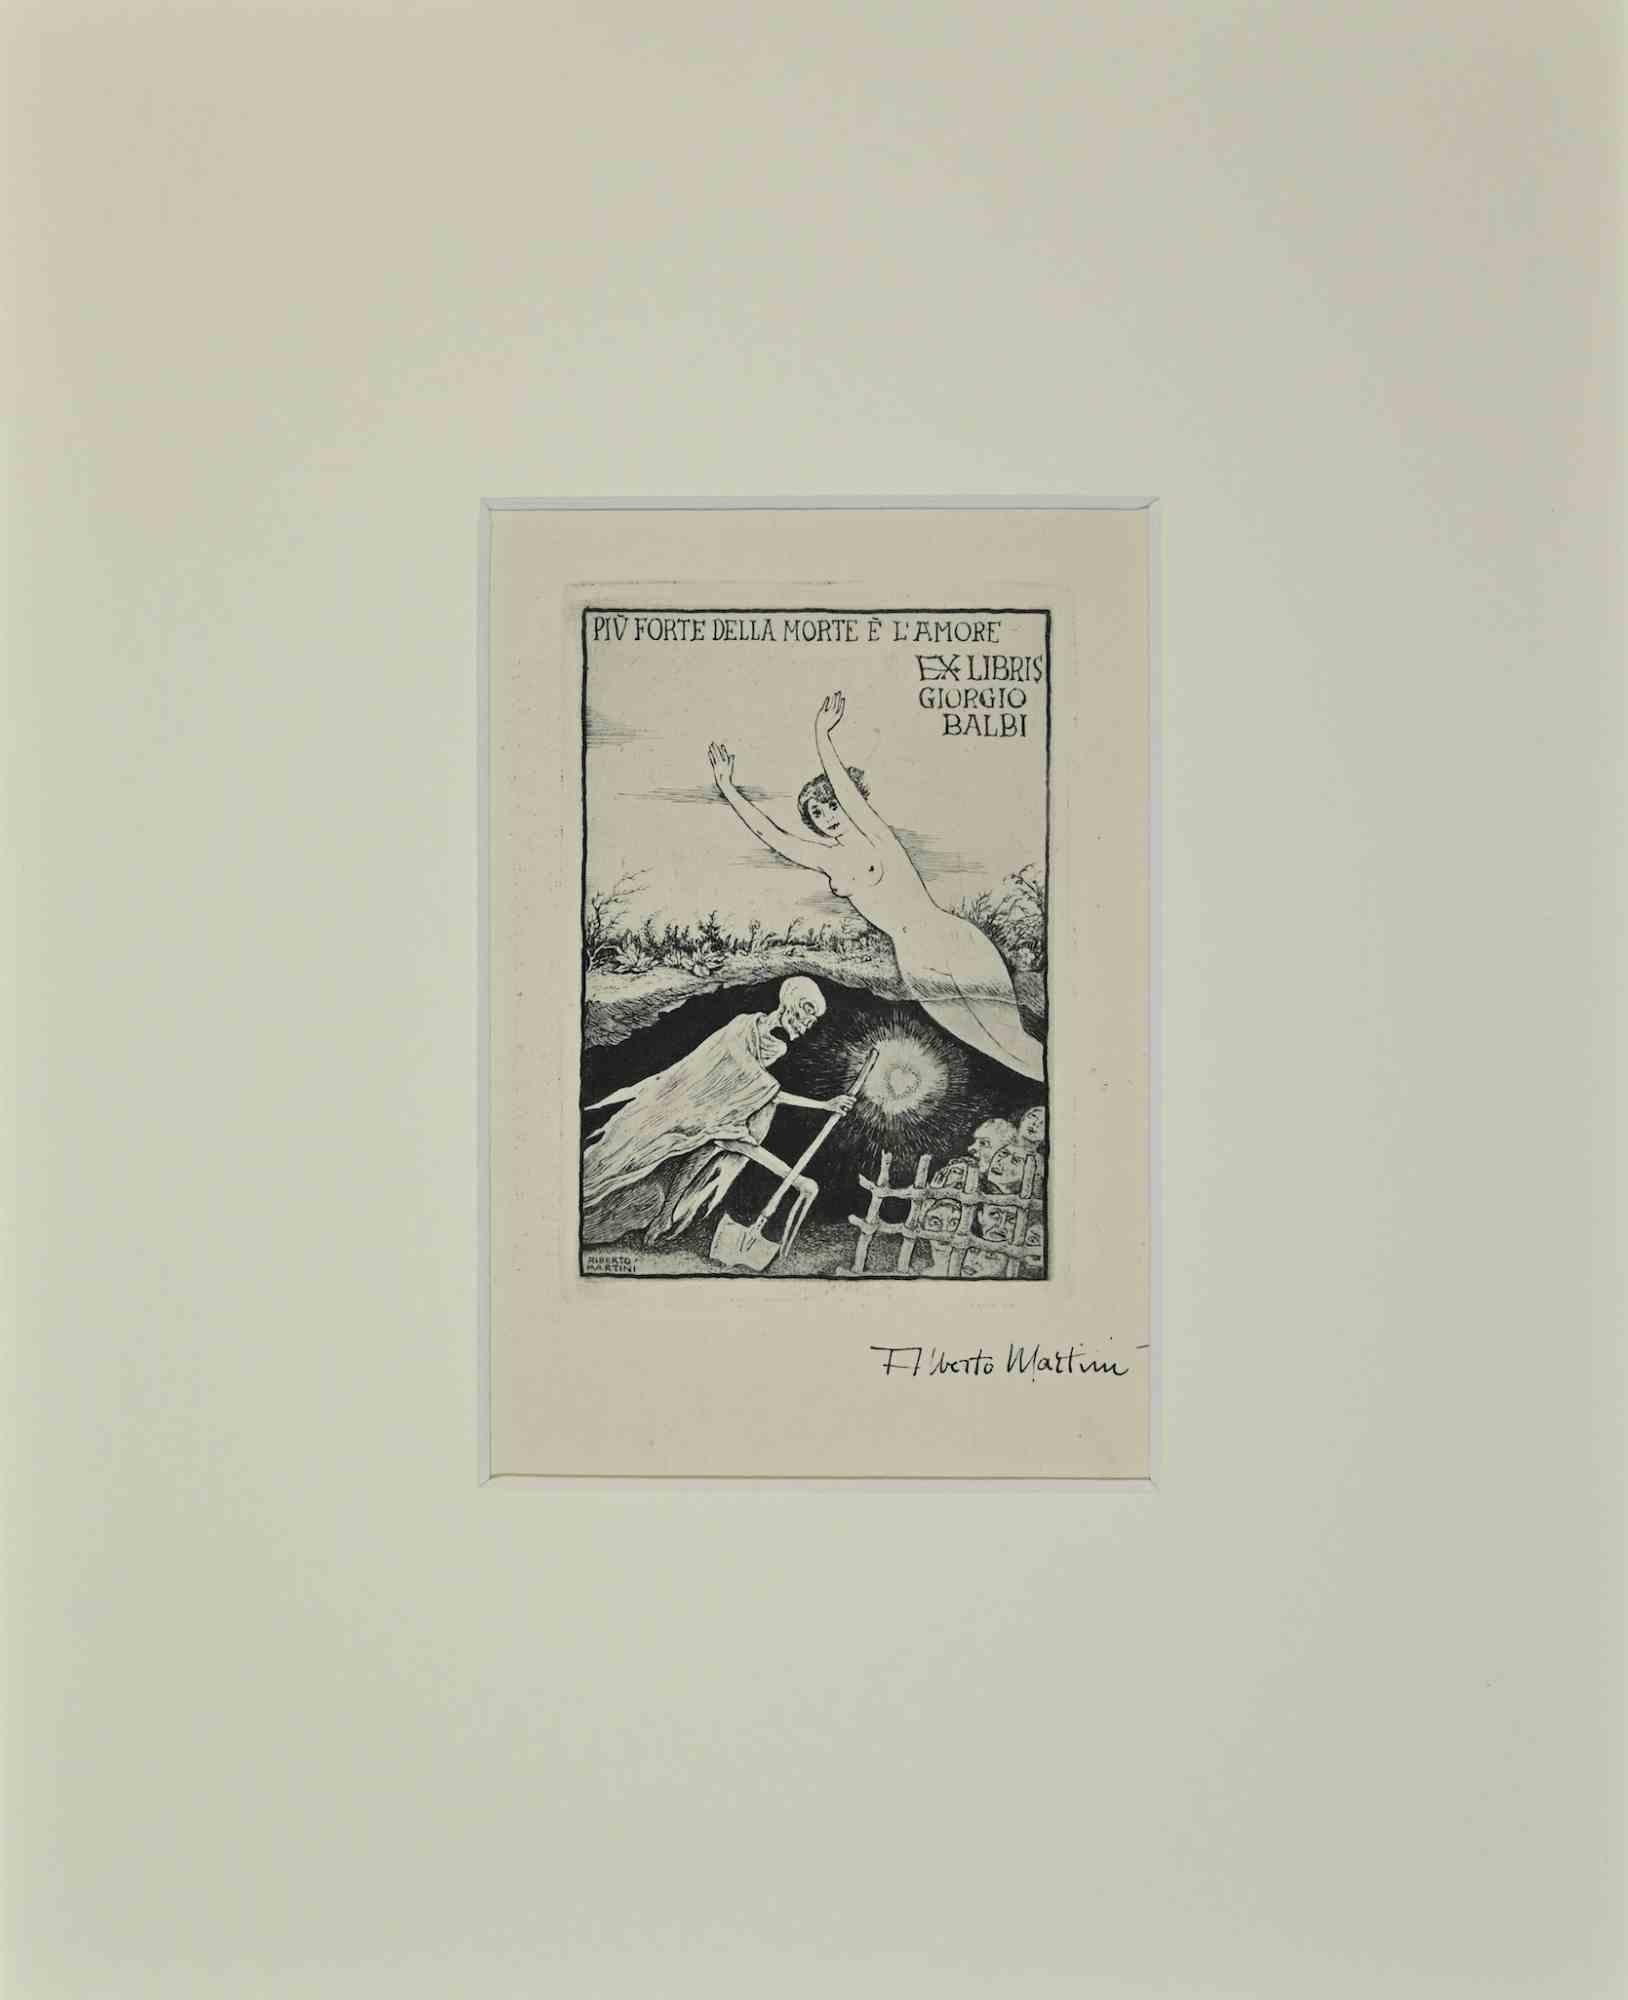 Ex Libris  - Giorgio Balbi - Piu Forte della Morte è Amore is an Artwork realized by Alberto Martini in Mid 20th Century.